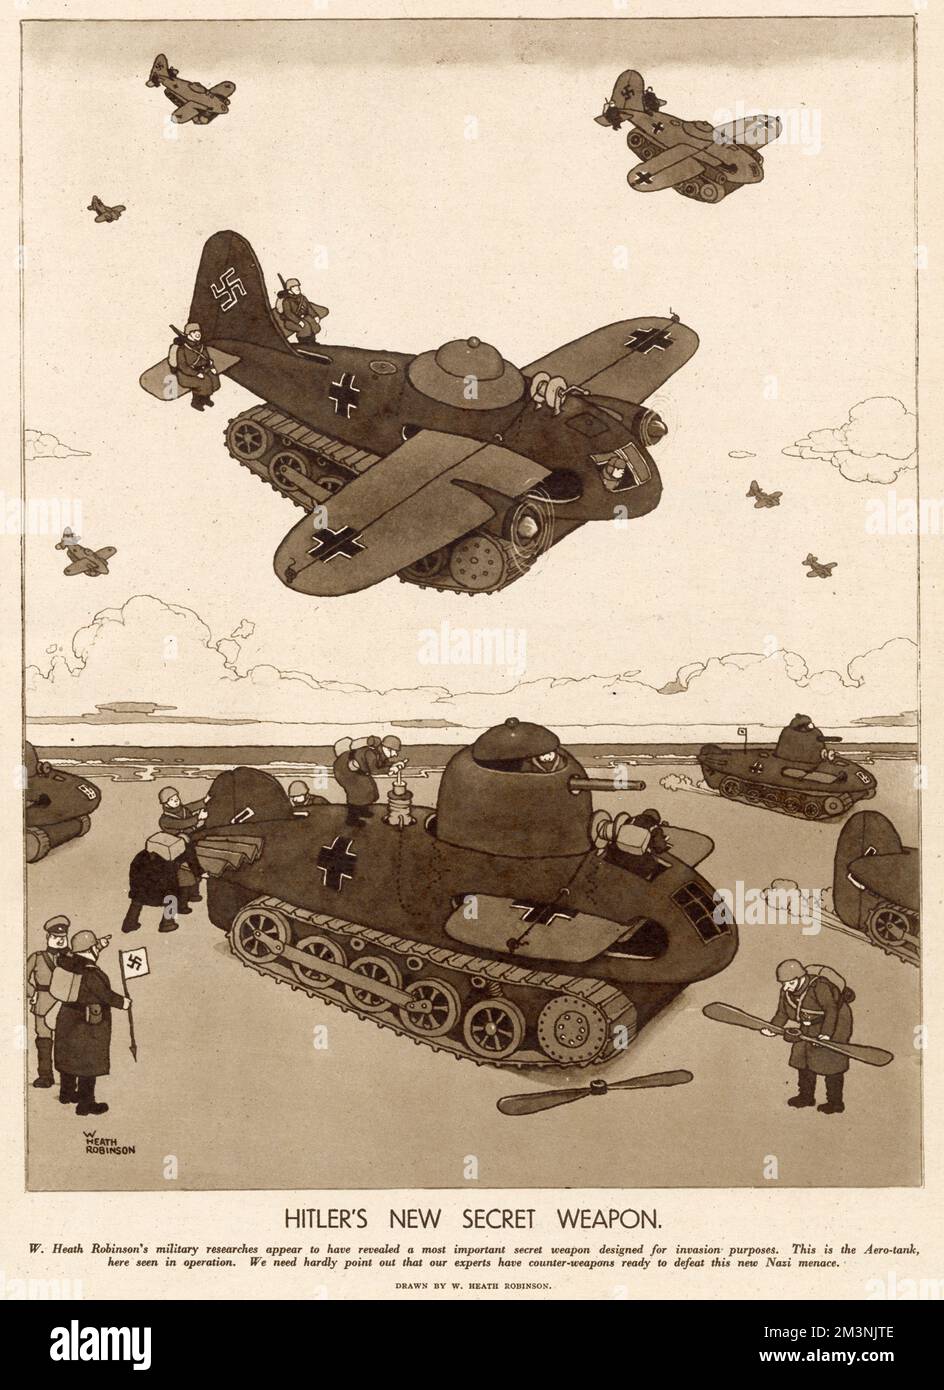 Illustration von William Heath Robinson über Deutschlands militärische Geheimwaffe für Invasionszwecke. Ein Aero-Panzer, der sich sehr schnell von einem Flugzeug in einen Panzer verwandeln lässt! Stockfoto